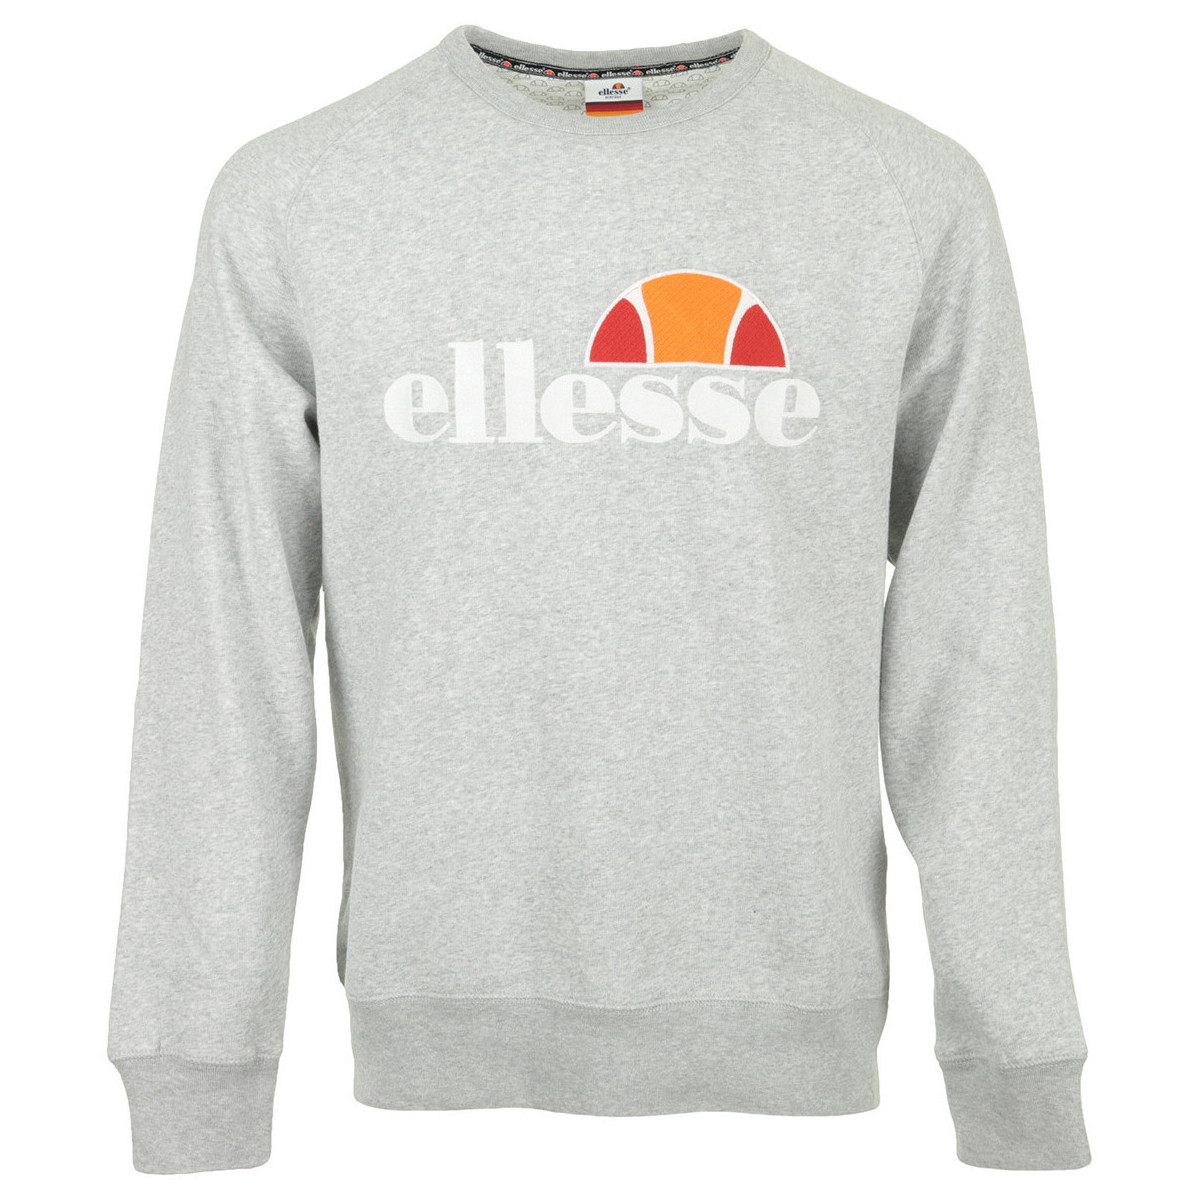 Textiel Heren Sweaters / Sweatshirts Ellesse Crew Neck Uni Grijs